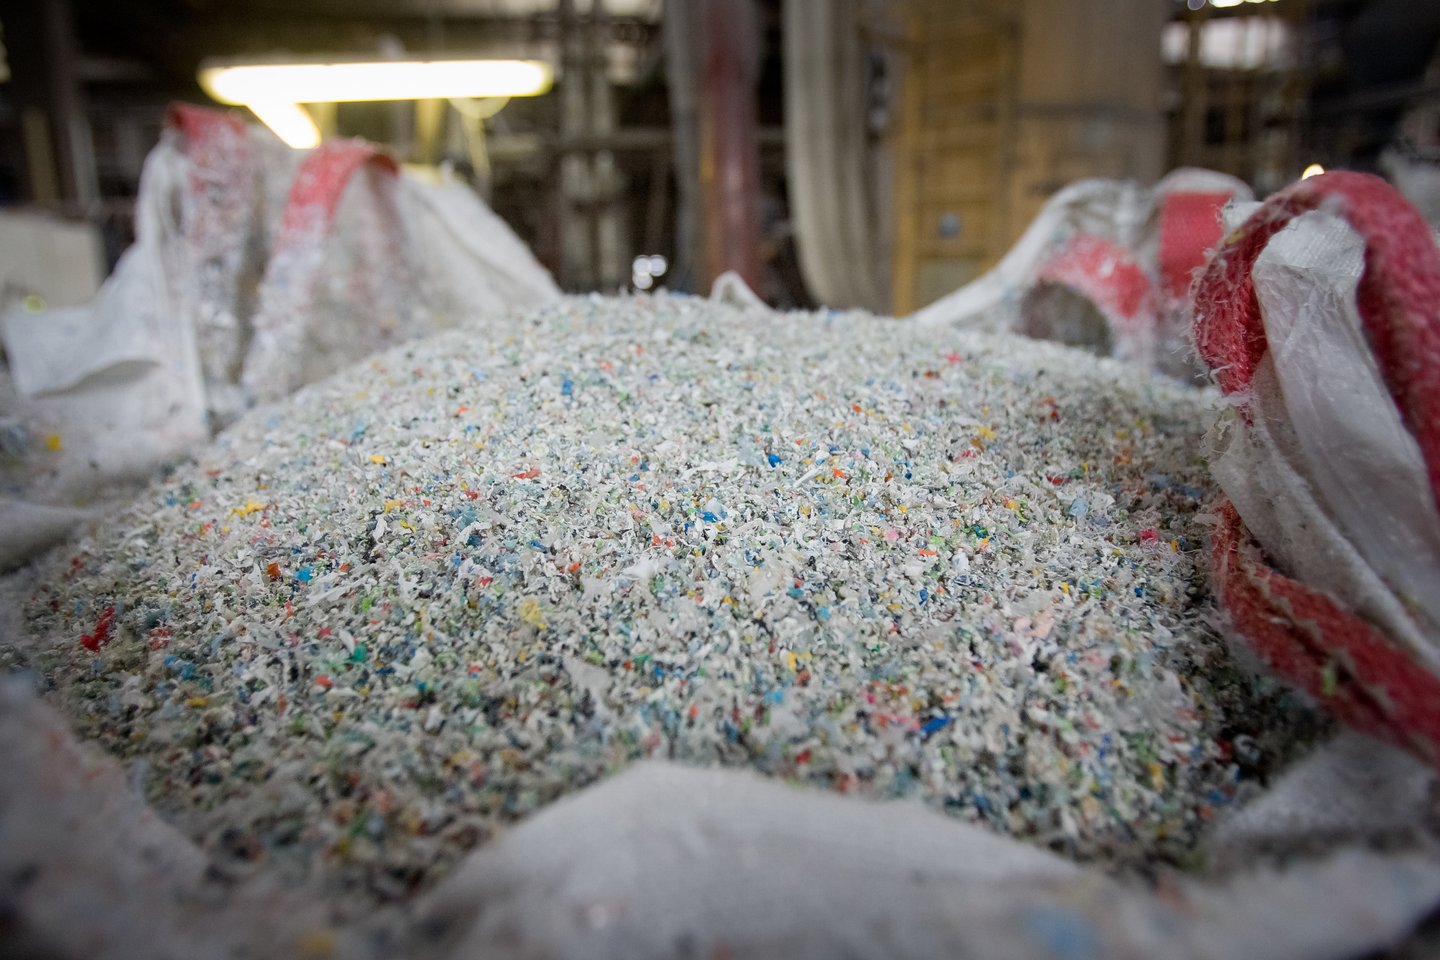 Kasmet pasaulyje susidaro apie 300 mln. tonų plastiko atliekų. Iš jų perdirbama tik maždaug 16 proc. Likusi dalis išmetama į sąvartynus, sudeginama arba paprasčiausiai patenka į aplinką.<br>D.Umbraso nuotr.